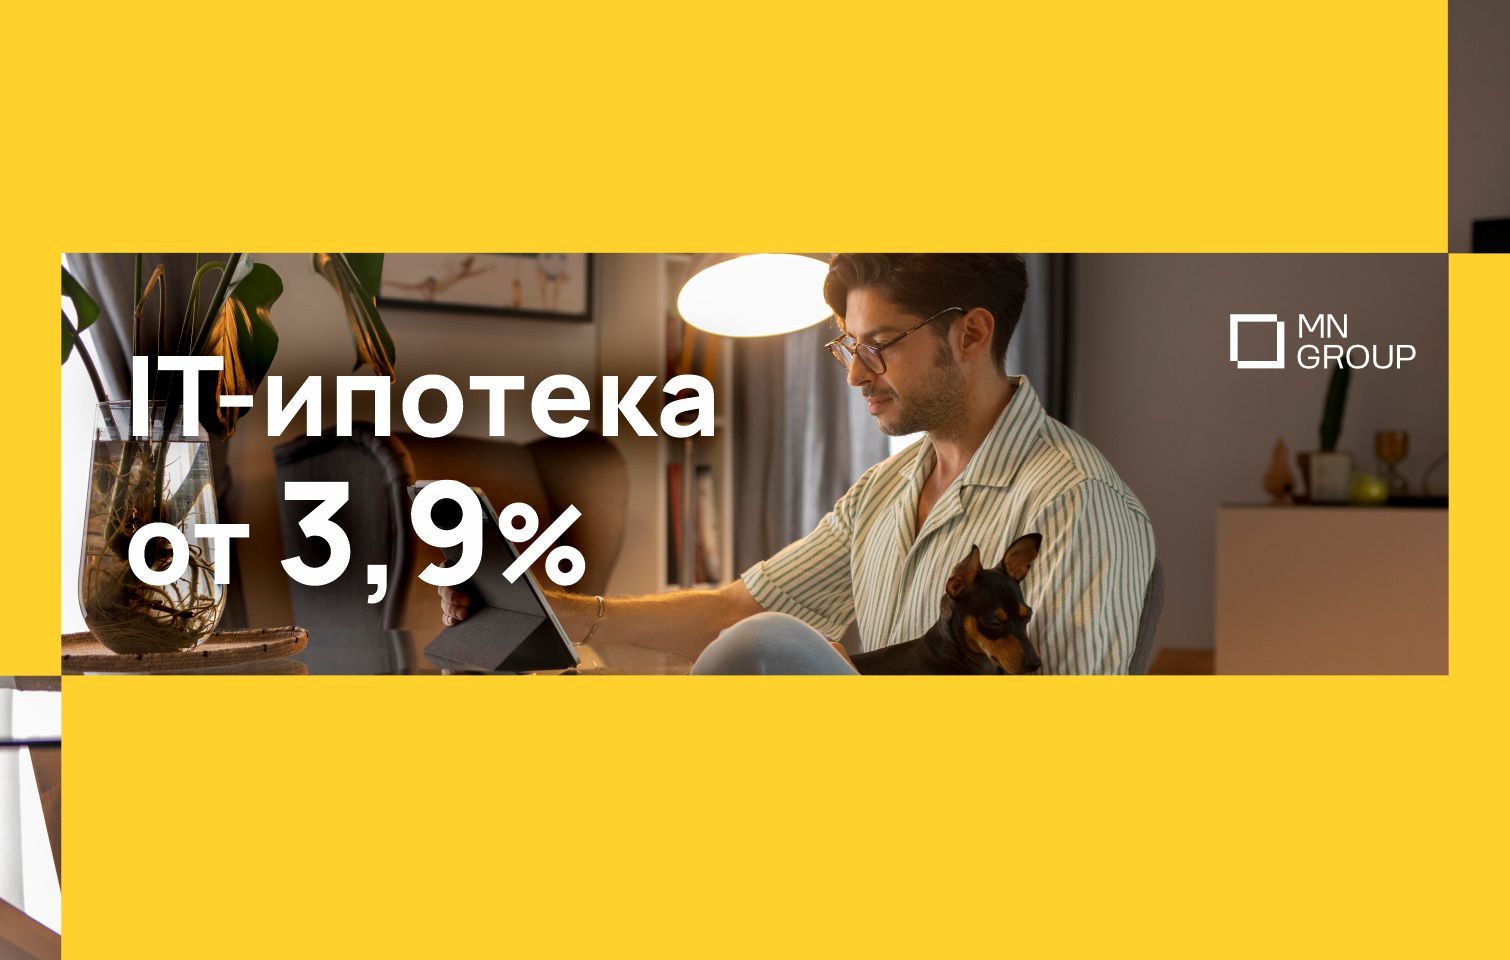 IT-ИПОТЕКА ВСЕГО ОТ 3,9%!